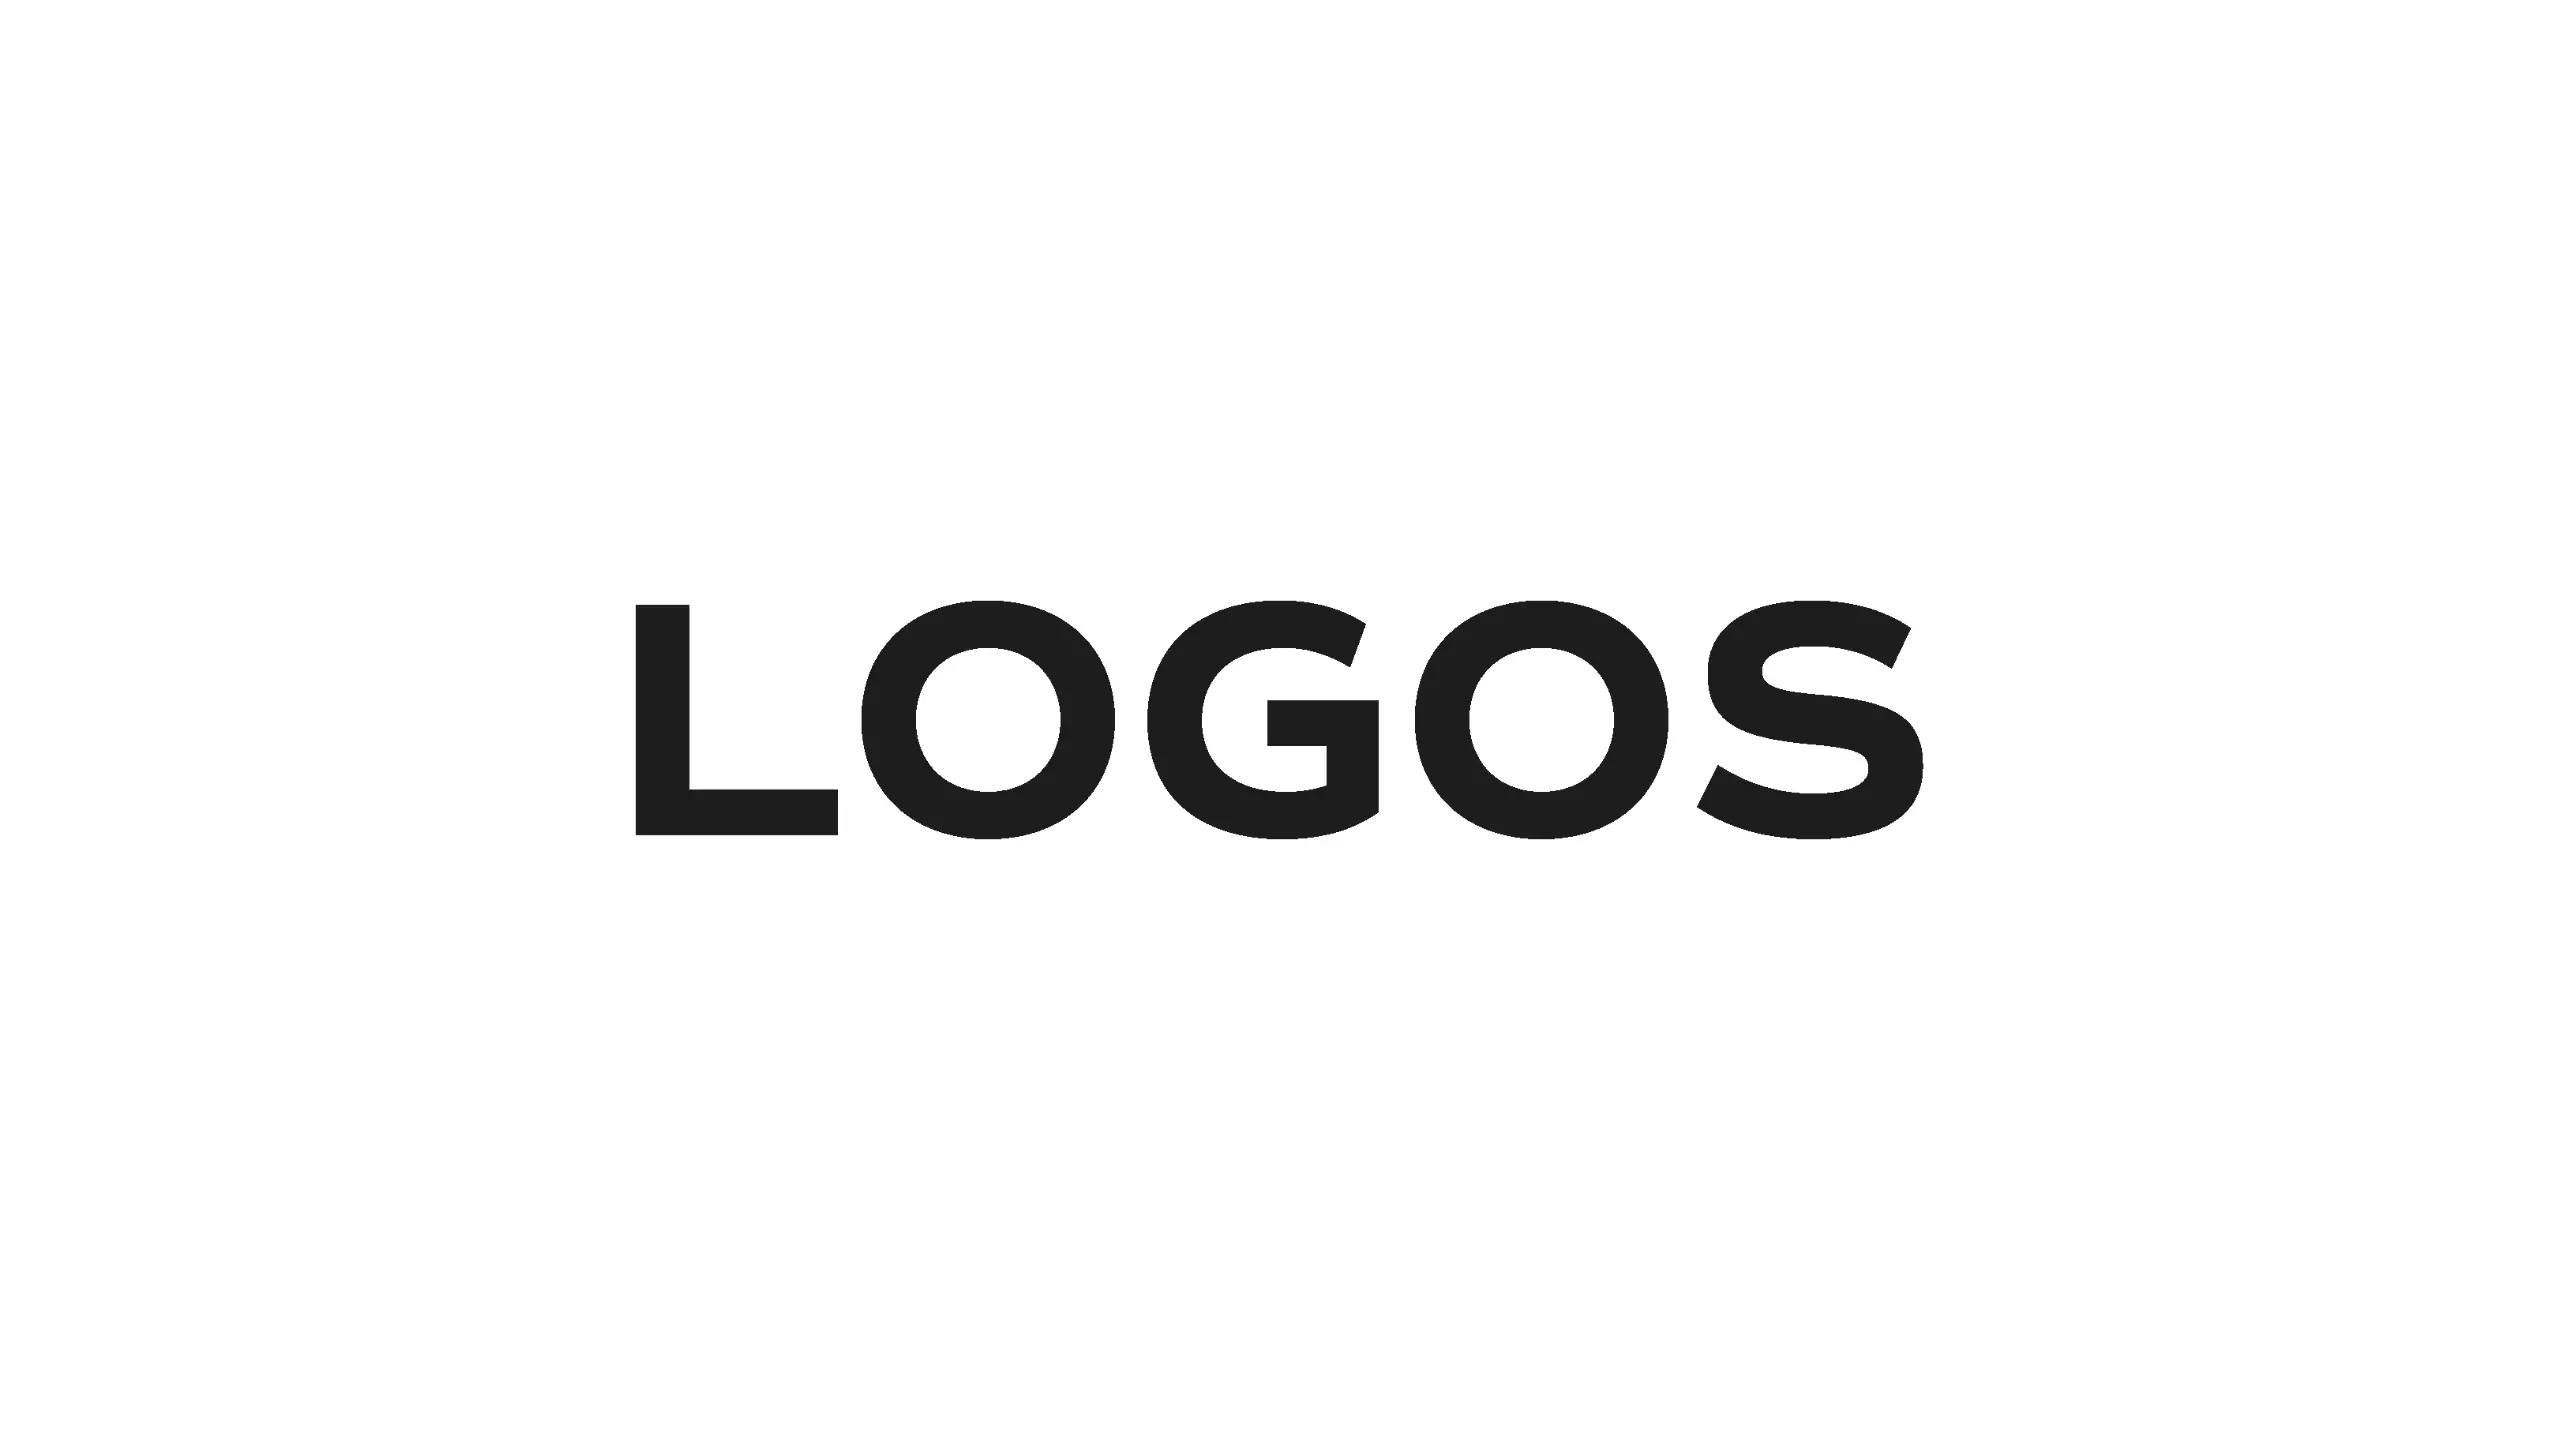 Logos-Hero-Image